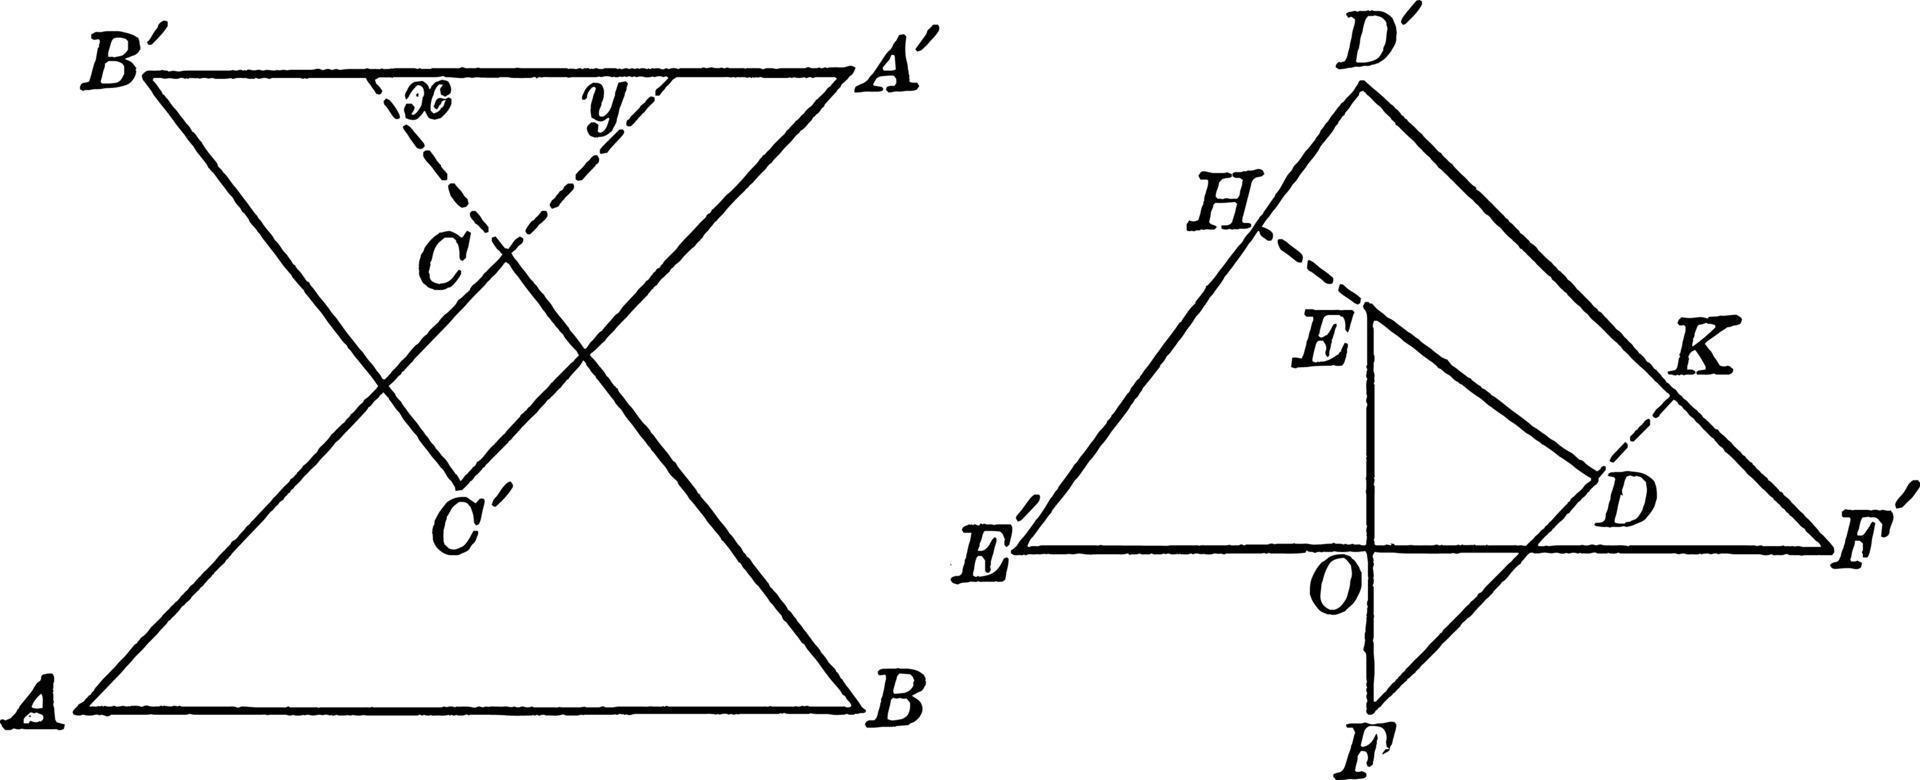 två trianglar av parallell sidor, årgång illustration. vektor